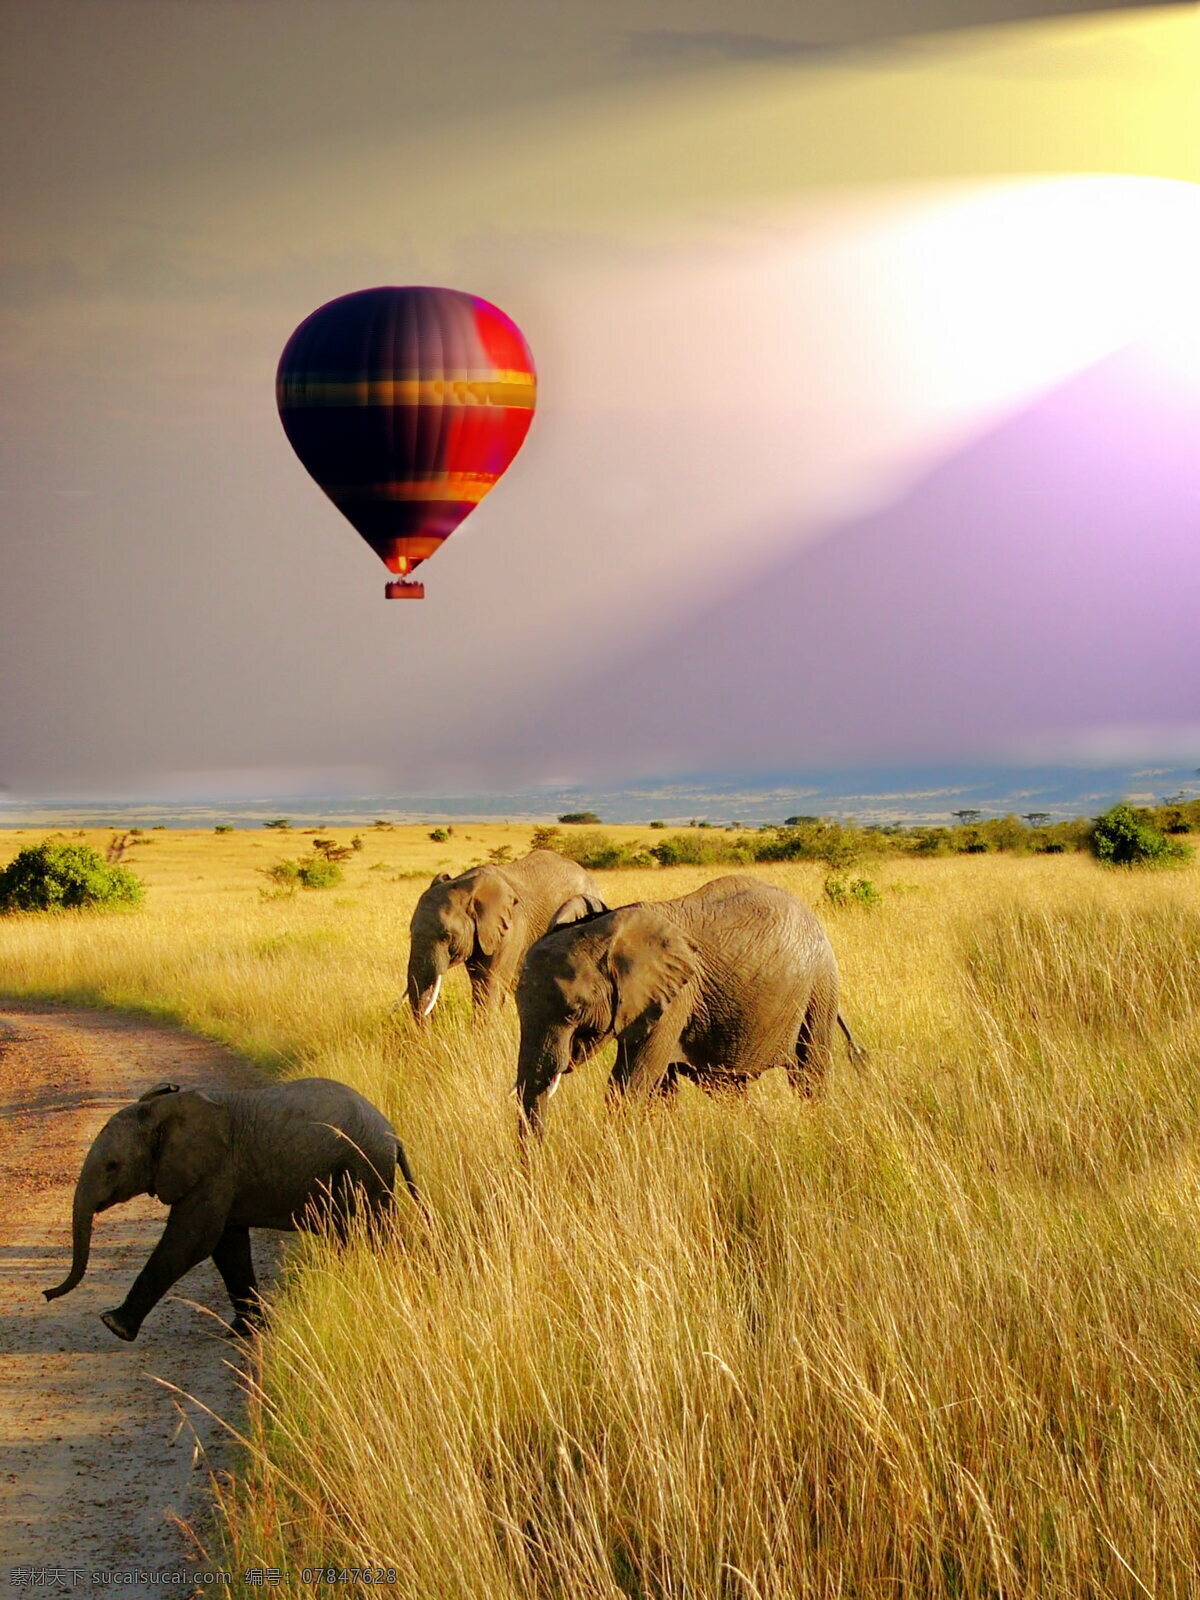 草原风景 热气球 大象 野生大象 野生象 野生动物 唯美 草原 风景 自然风景 自然风光 风景图 自然景观